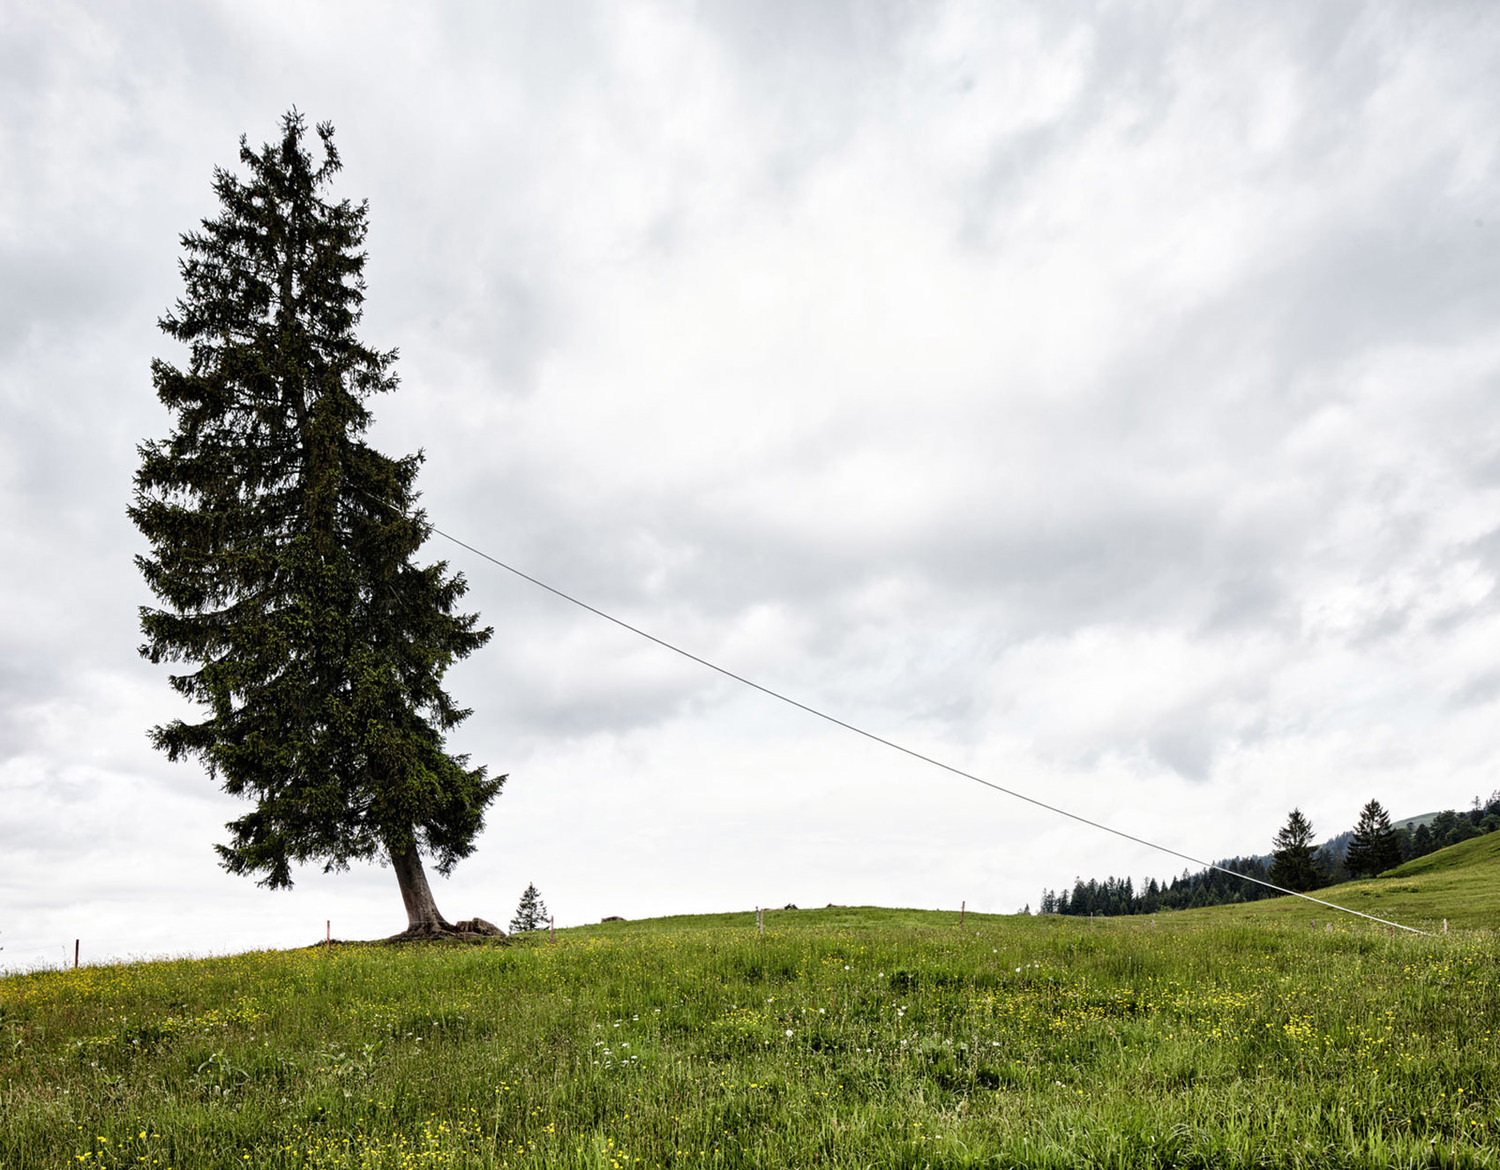 奥地利山林中的创意景观​装置艺术